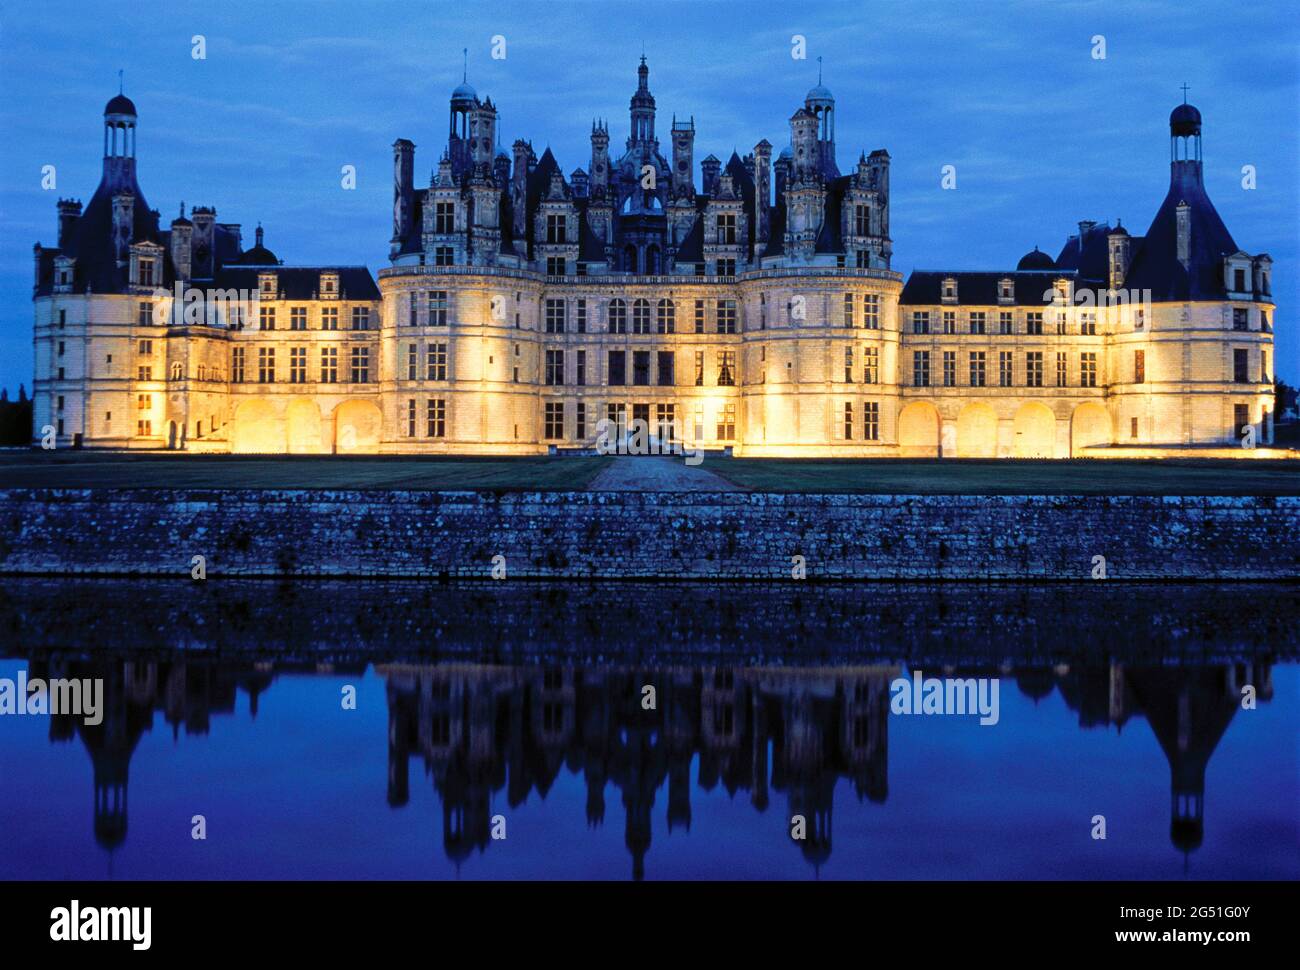 Vue sur le château de Chambord, vallée de la Loire, France Banque D'Images